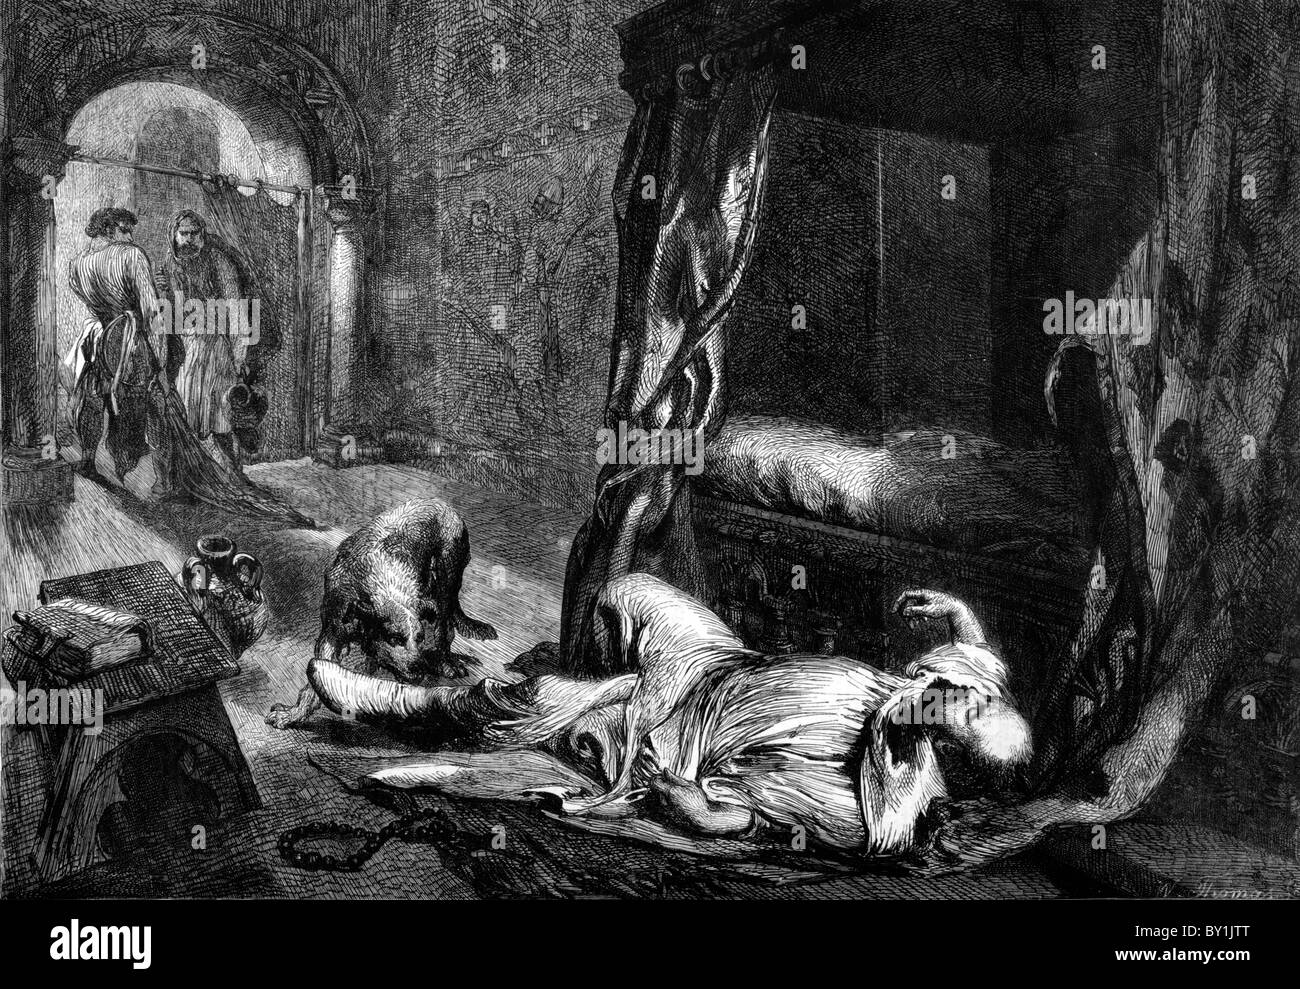 La mort de Guillaume le Conquérant, 1087 : 19ème siècle illustration noir et blanc ; de la London Illustrated News Banque D'Images